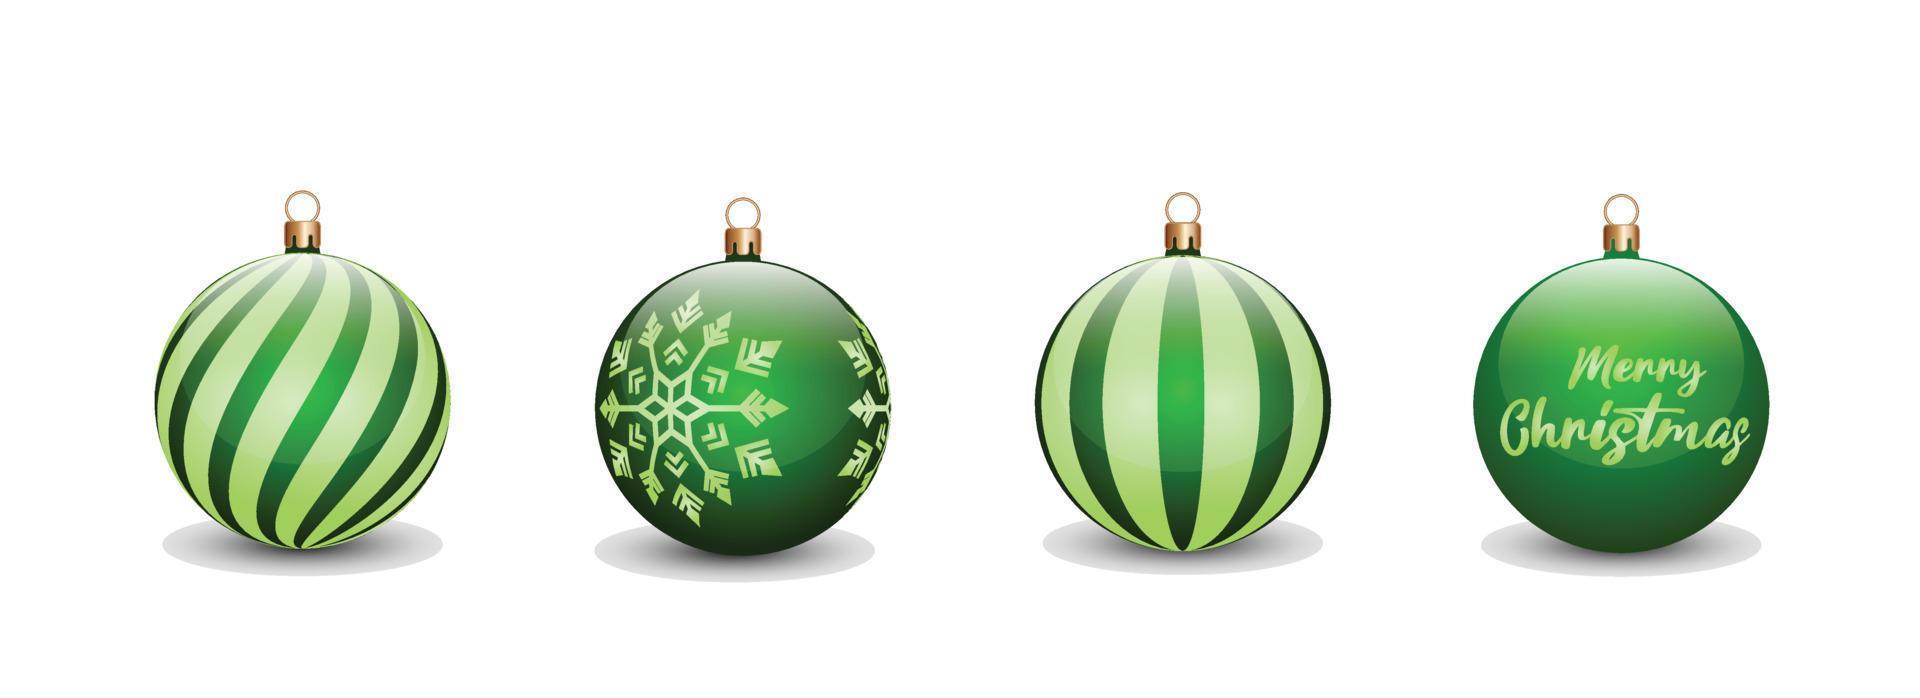 ensemble de concept de boules de noël de couleur verte pour la célébration du jour de noël. peut être utilisé pour les éléments de conception, les invitations, les affiches, les bannières, les panneaux d'affichage avec un concept de noël vecteur